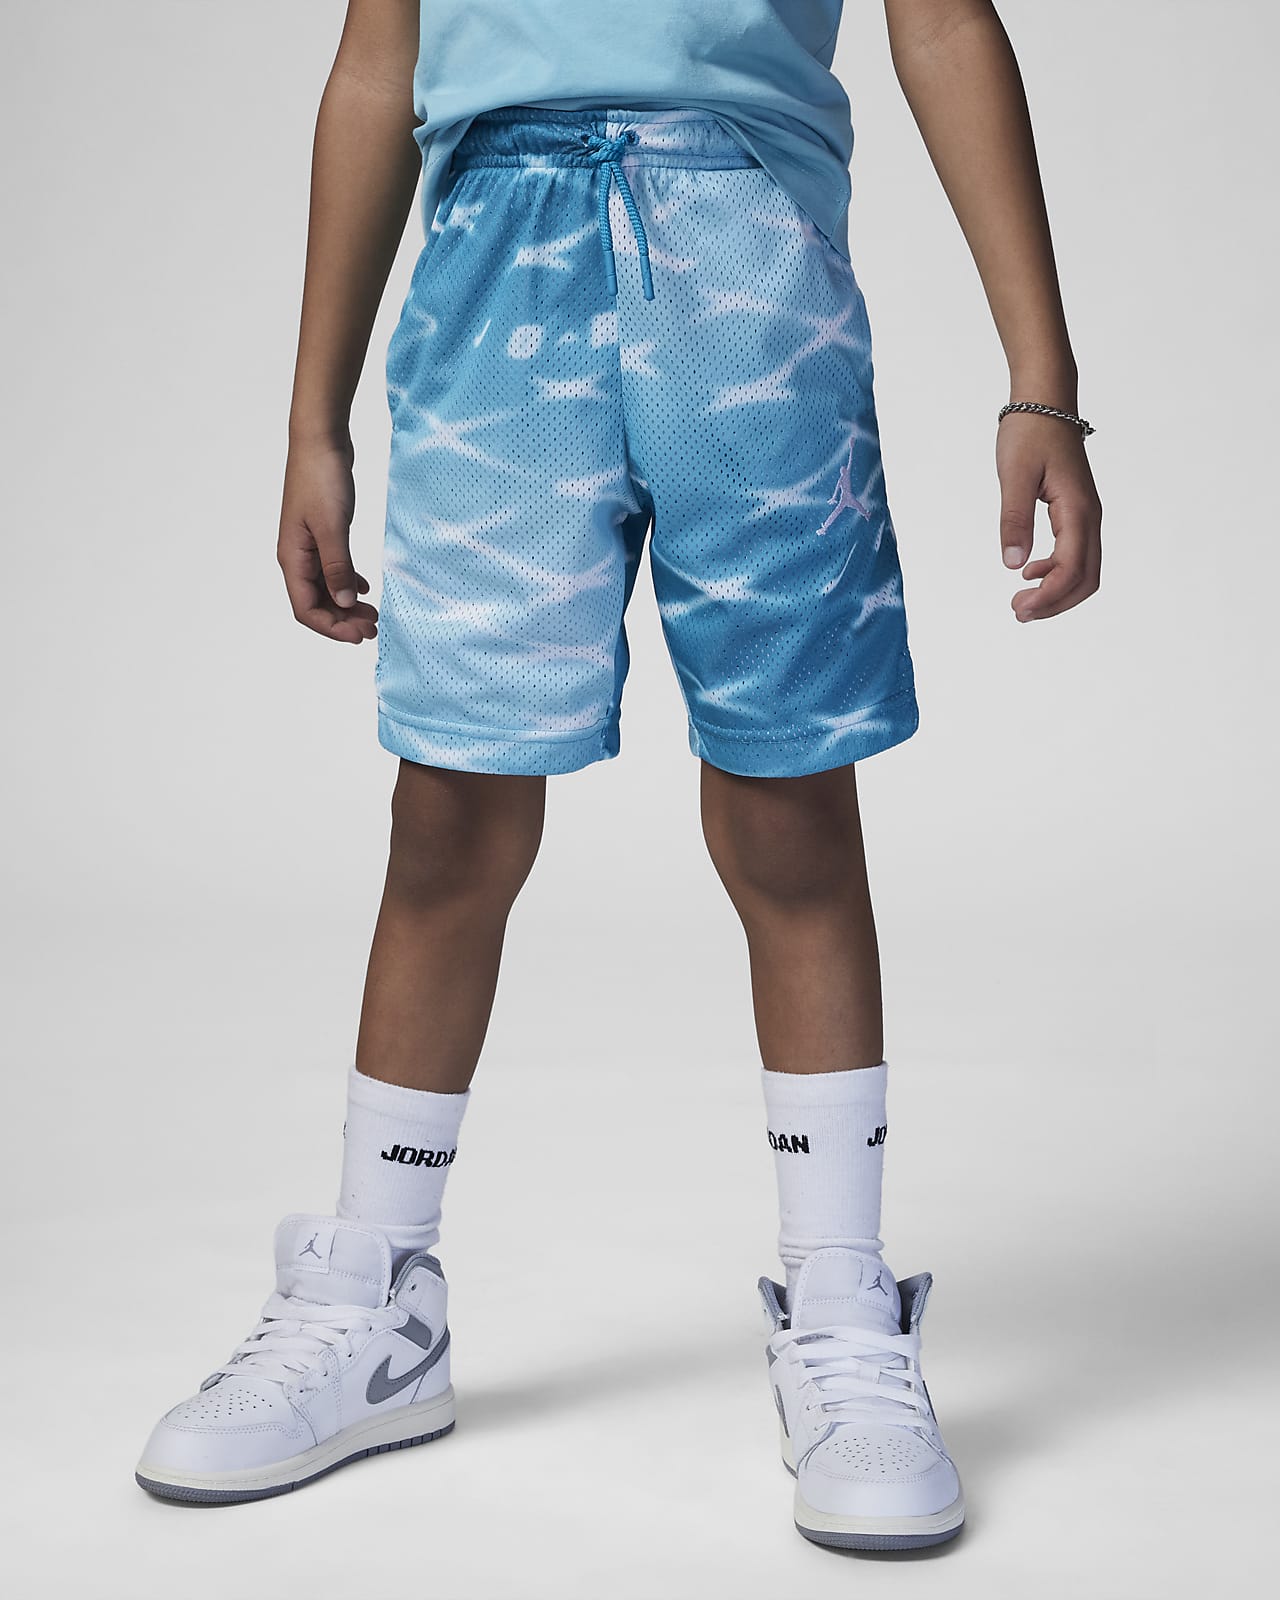 Jordan MJ Essentials Printed Shorts Little Kids' Dri-FIT Mesh Shorts